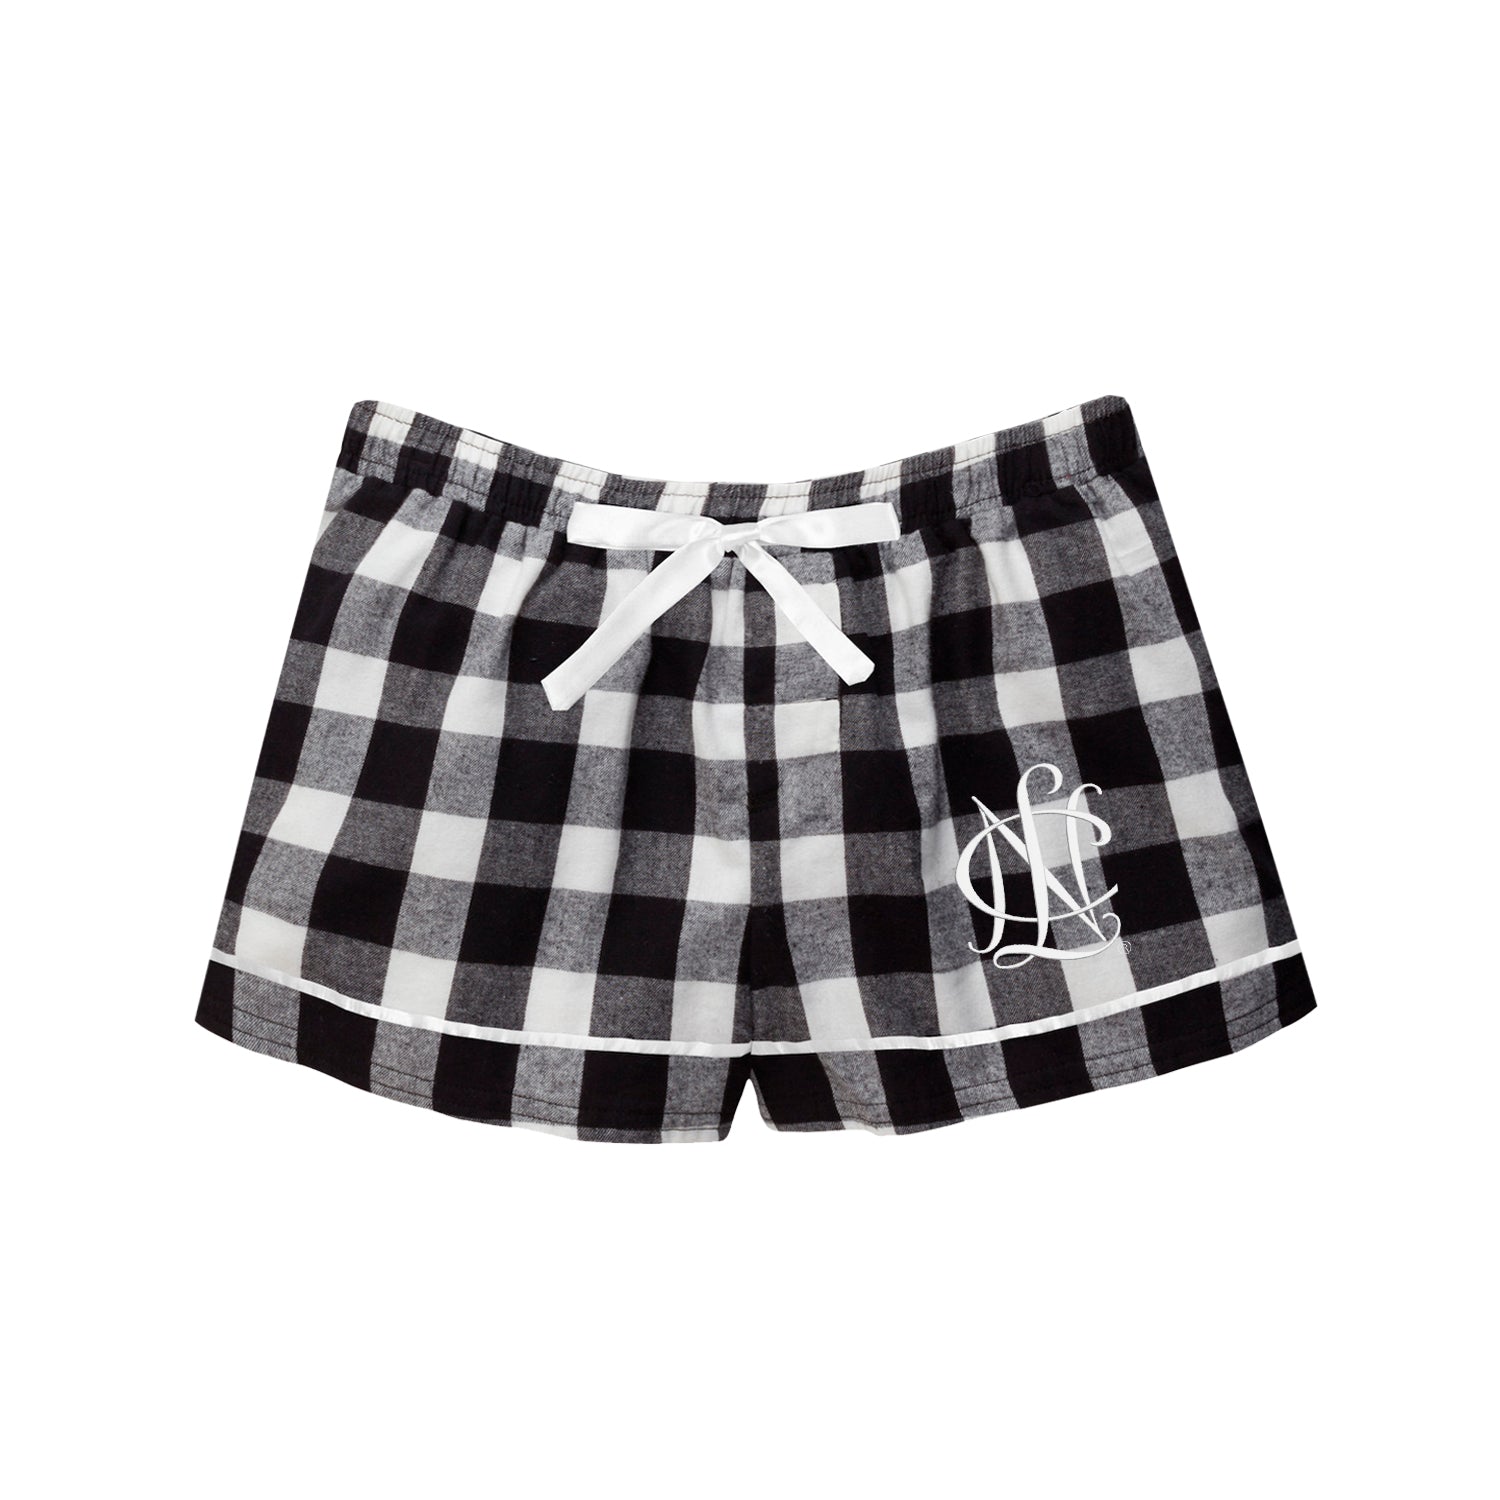 NCL Marketplace NCL Pajama Shorts - Black Buffalo Check